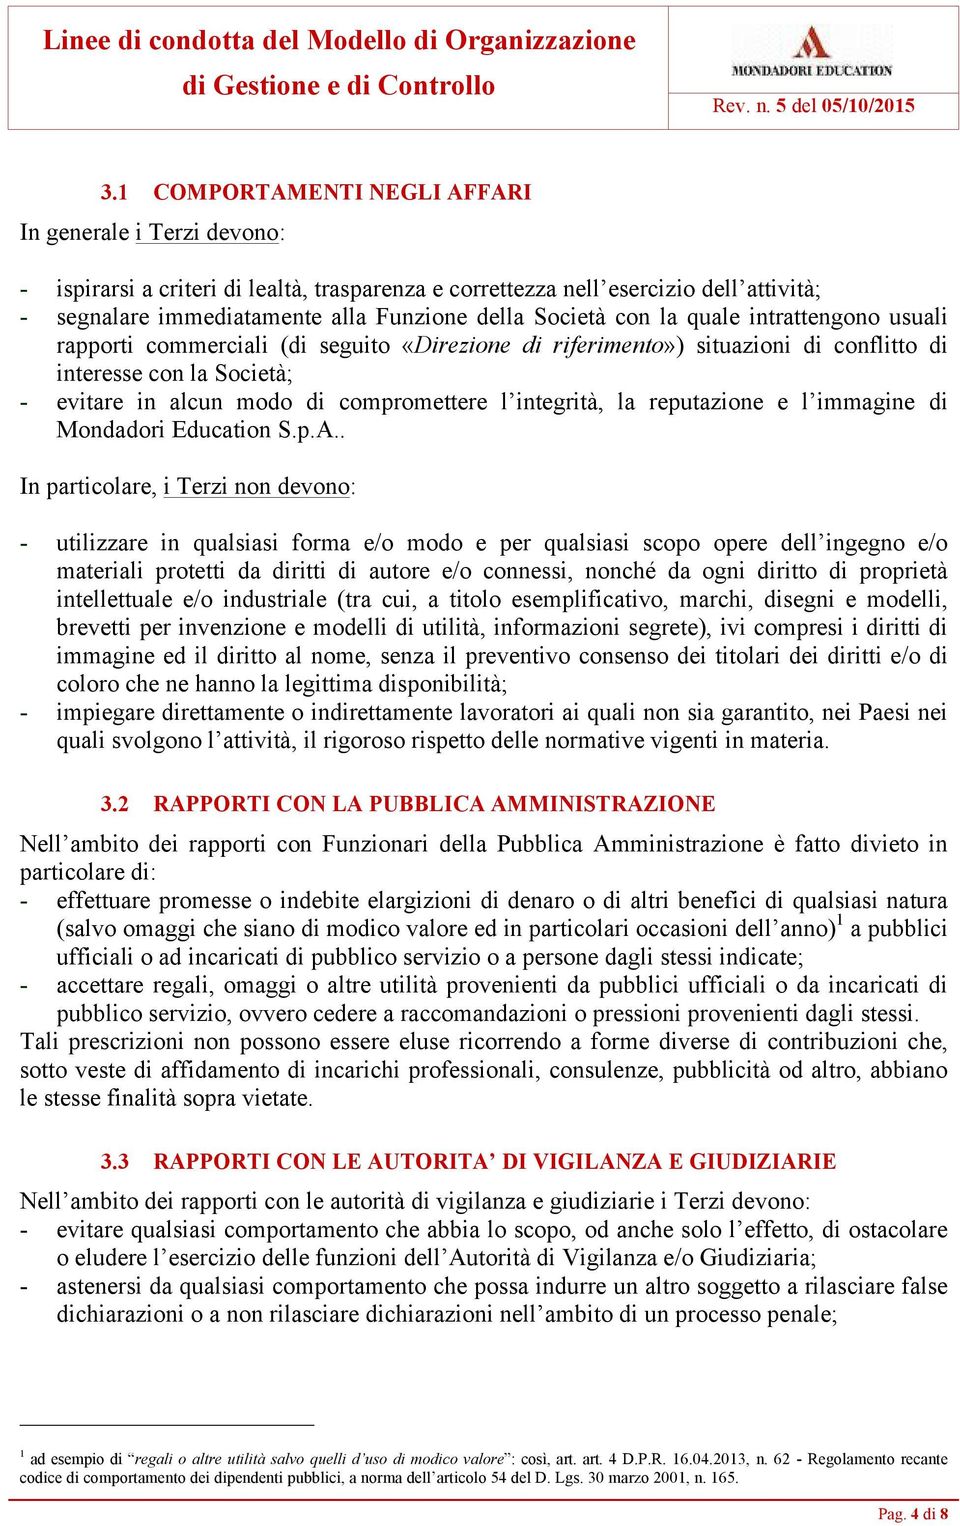 integrità, la reputazione e l immagine di Mondadori Education S.p.A.